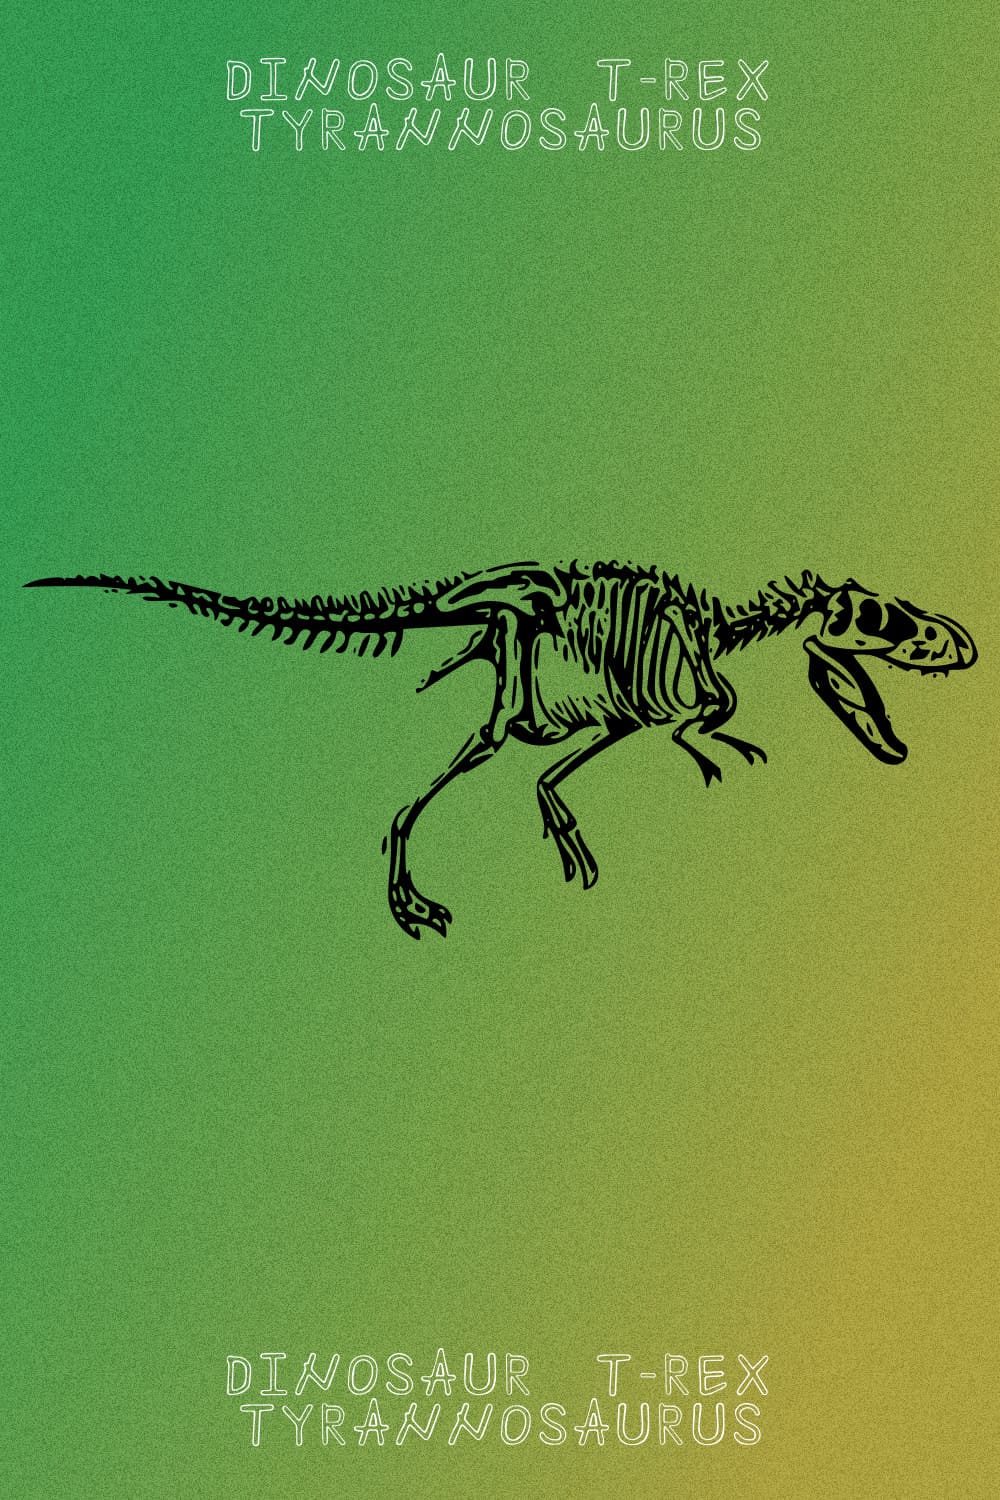 Dinosaur T-rex Tyrannosaurus - Pinterest Image.